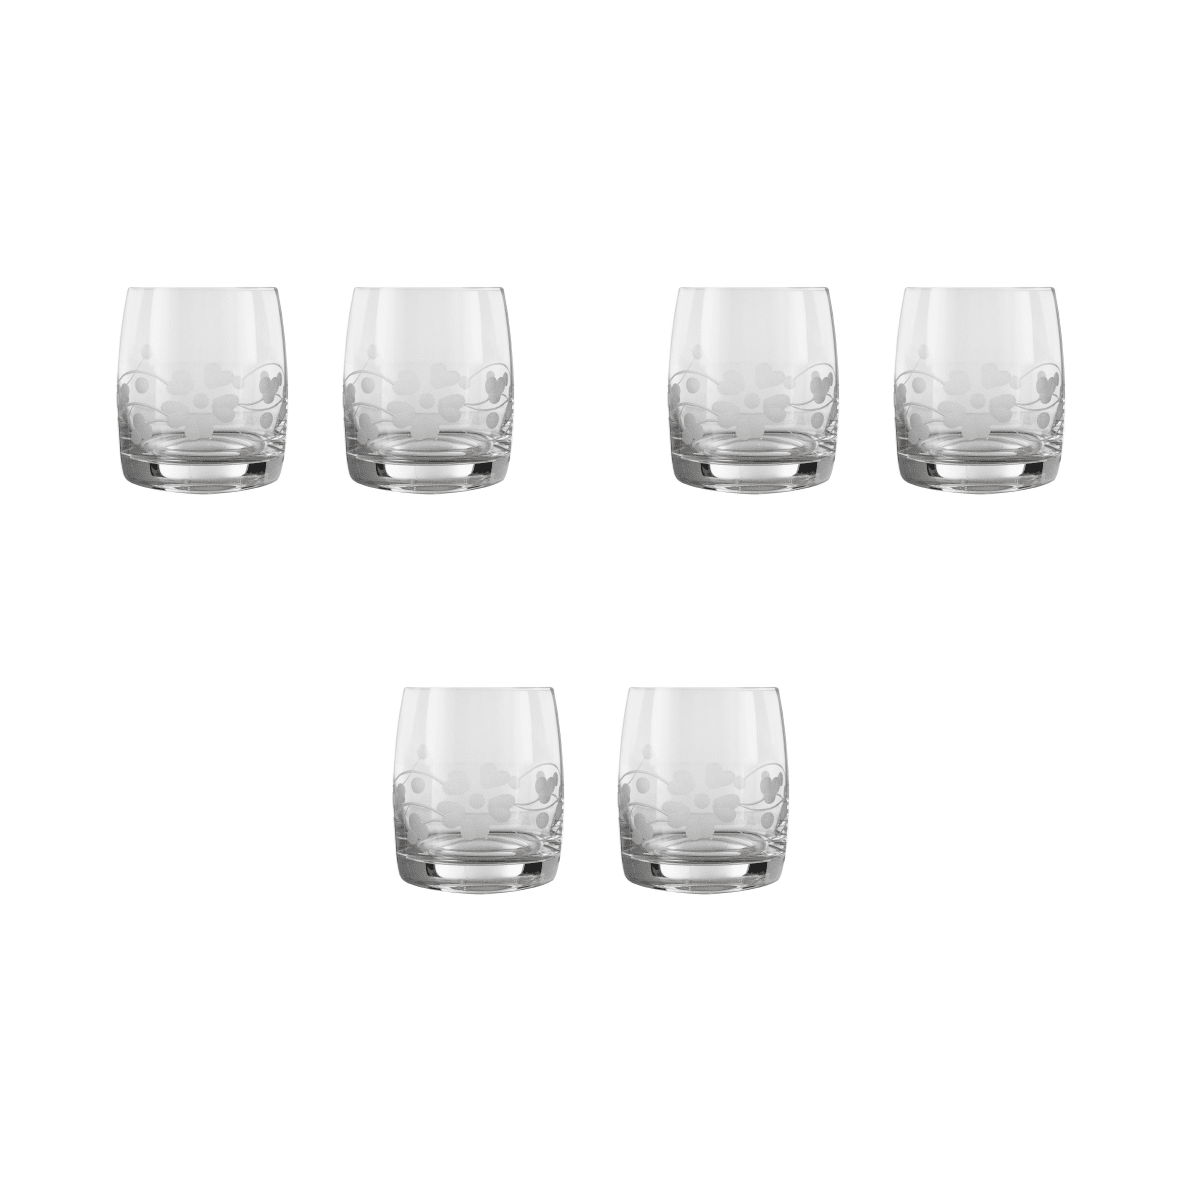 Bohemia Crystal - Tumbler Glass Set 6 Pieces - 290ml - 2700010199